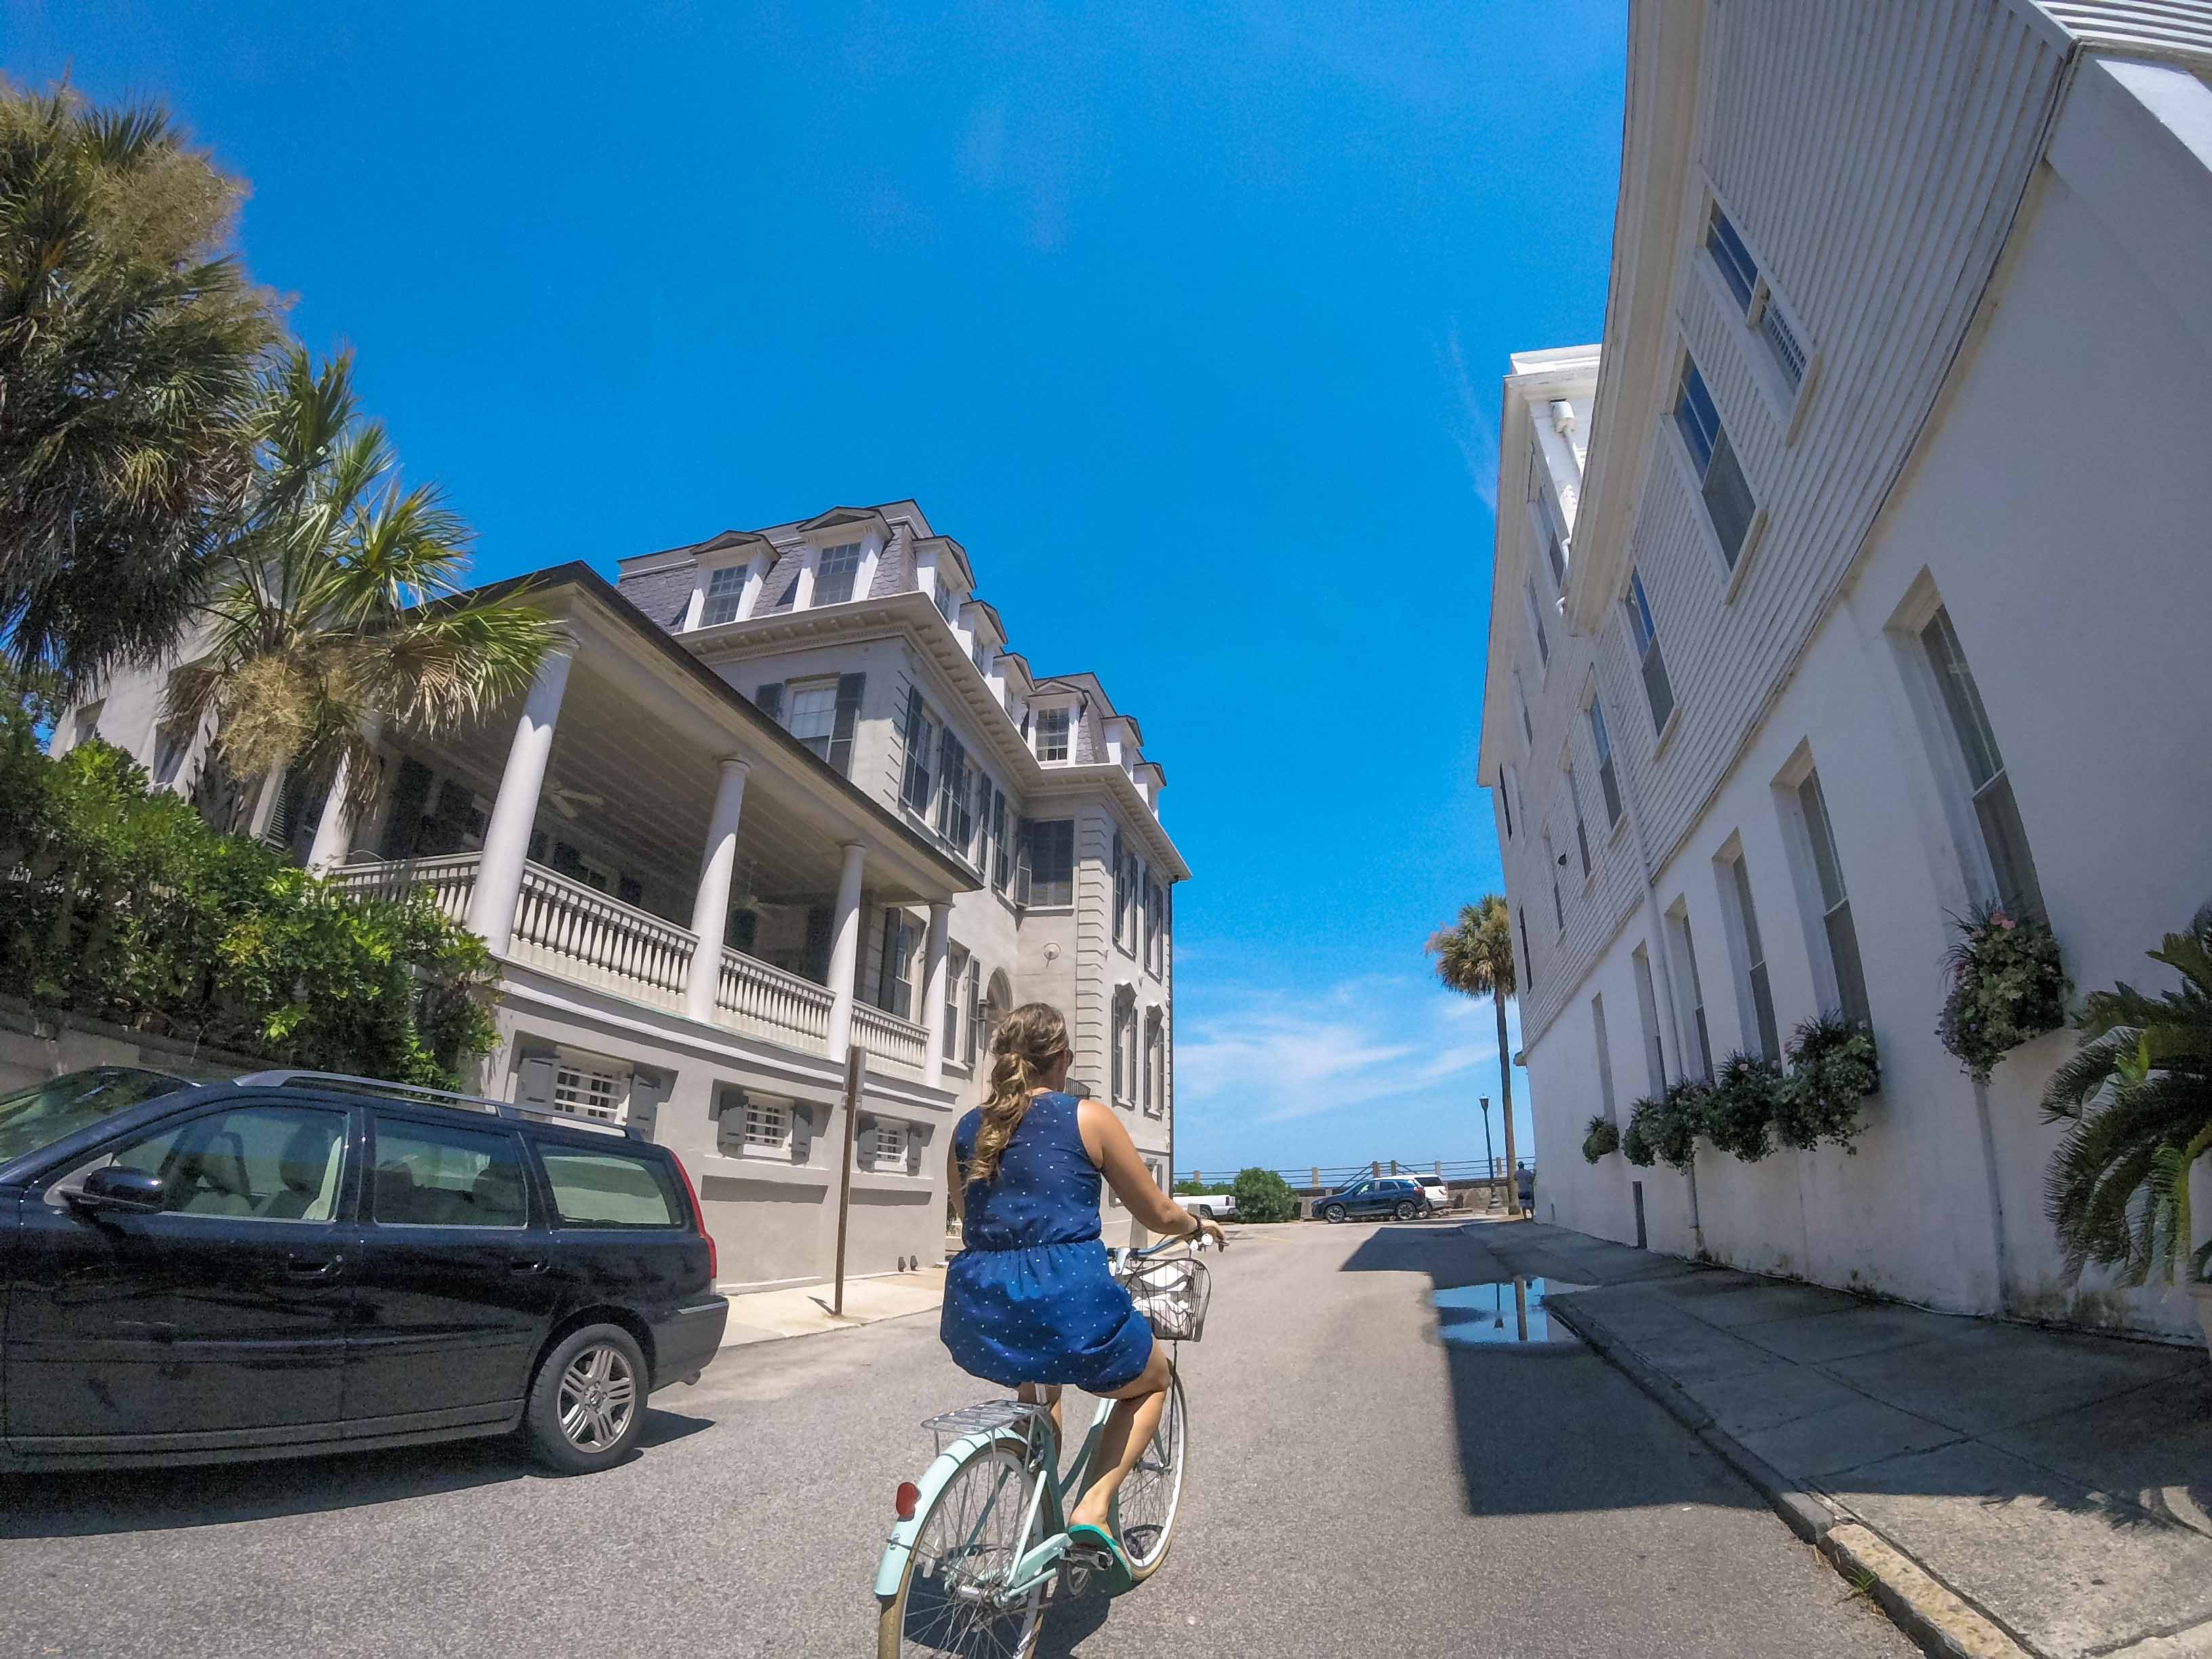 Biking around Charleston